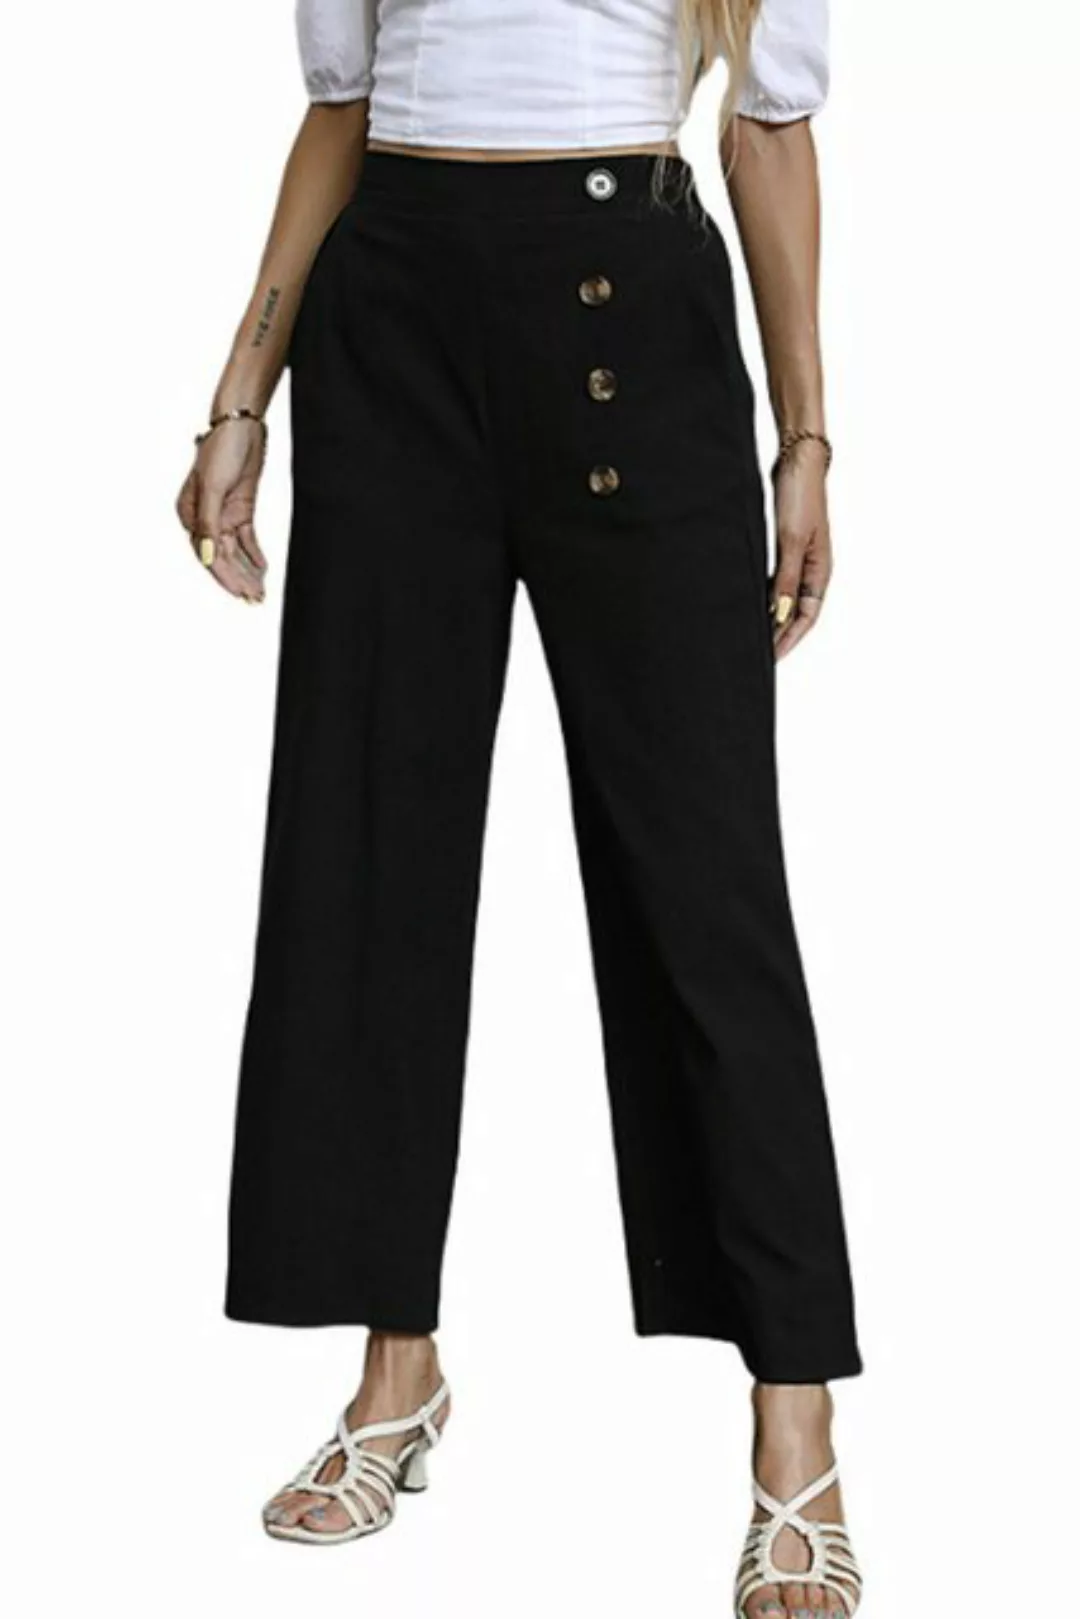 JDMGZSR Loungehose Lockere Hose mit einfarbigem Gummiband und hoher Taille günstig online kaufen